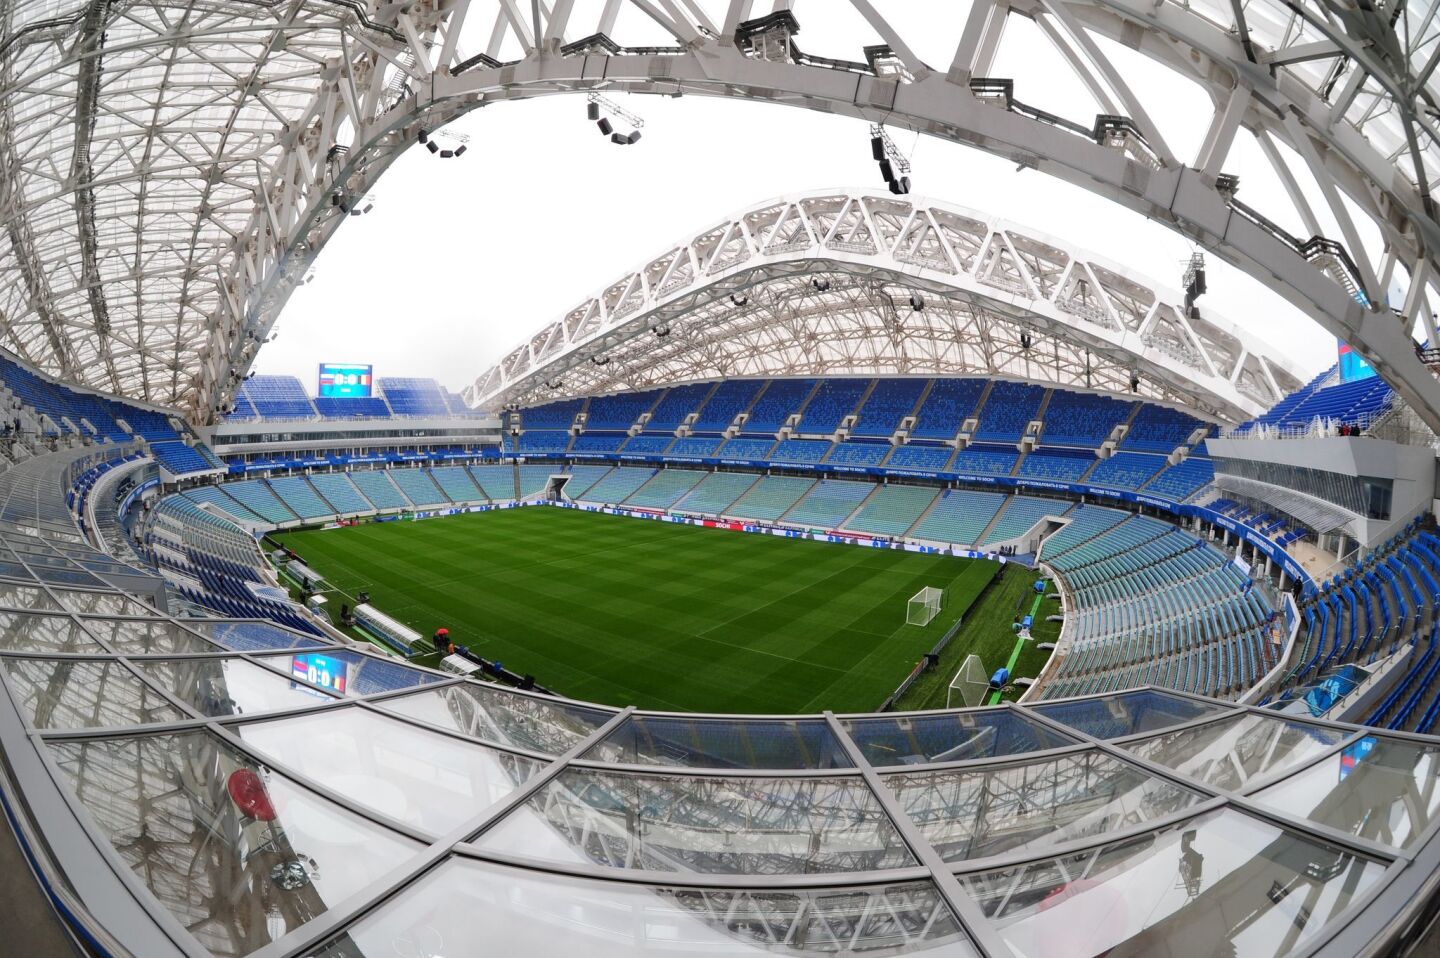 ESTADIO FISHT Ciudad: Sochi. Capacidad: 47,700. Costo: 400 millones de dólarespara la construcción inicial, 68 millones a fin de convertirlo para fútbol. Colocado junto al Mar Negro, el Estadio Fisht fue la sede de las ceremonias de inauguración y clausura de las Olimpiadas de Invierno del 2014 y de partidos de la Copa de Confederaciones este año. No está claro qué va a pasar con la instalación tras el Mundial, ya que Sochi no tiene un club de fútbol. Se recomienda a los hinchas reservar hoteles cerca del Parque Olímpico, porque la ciudad de Sochi está a más de una hora de distancia.